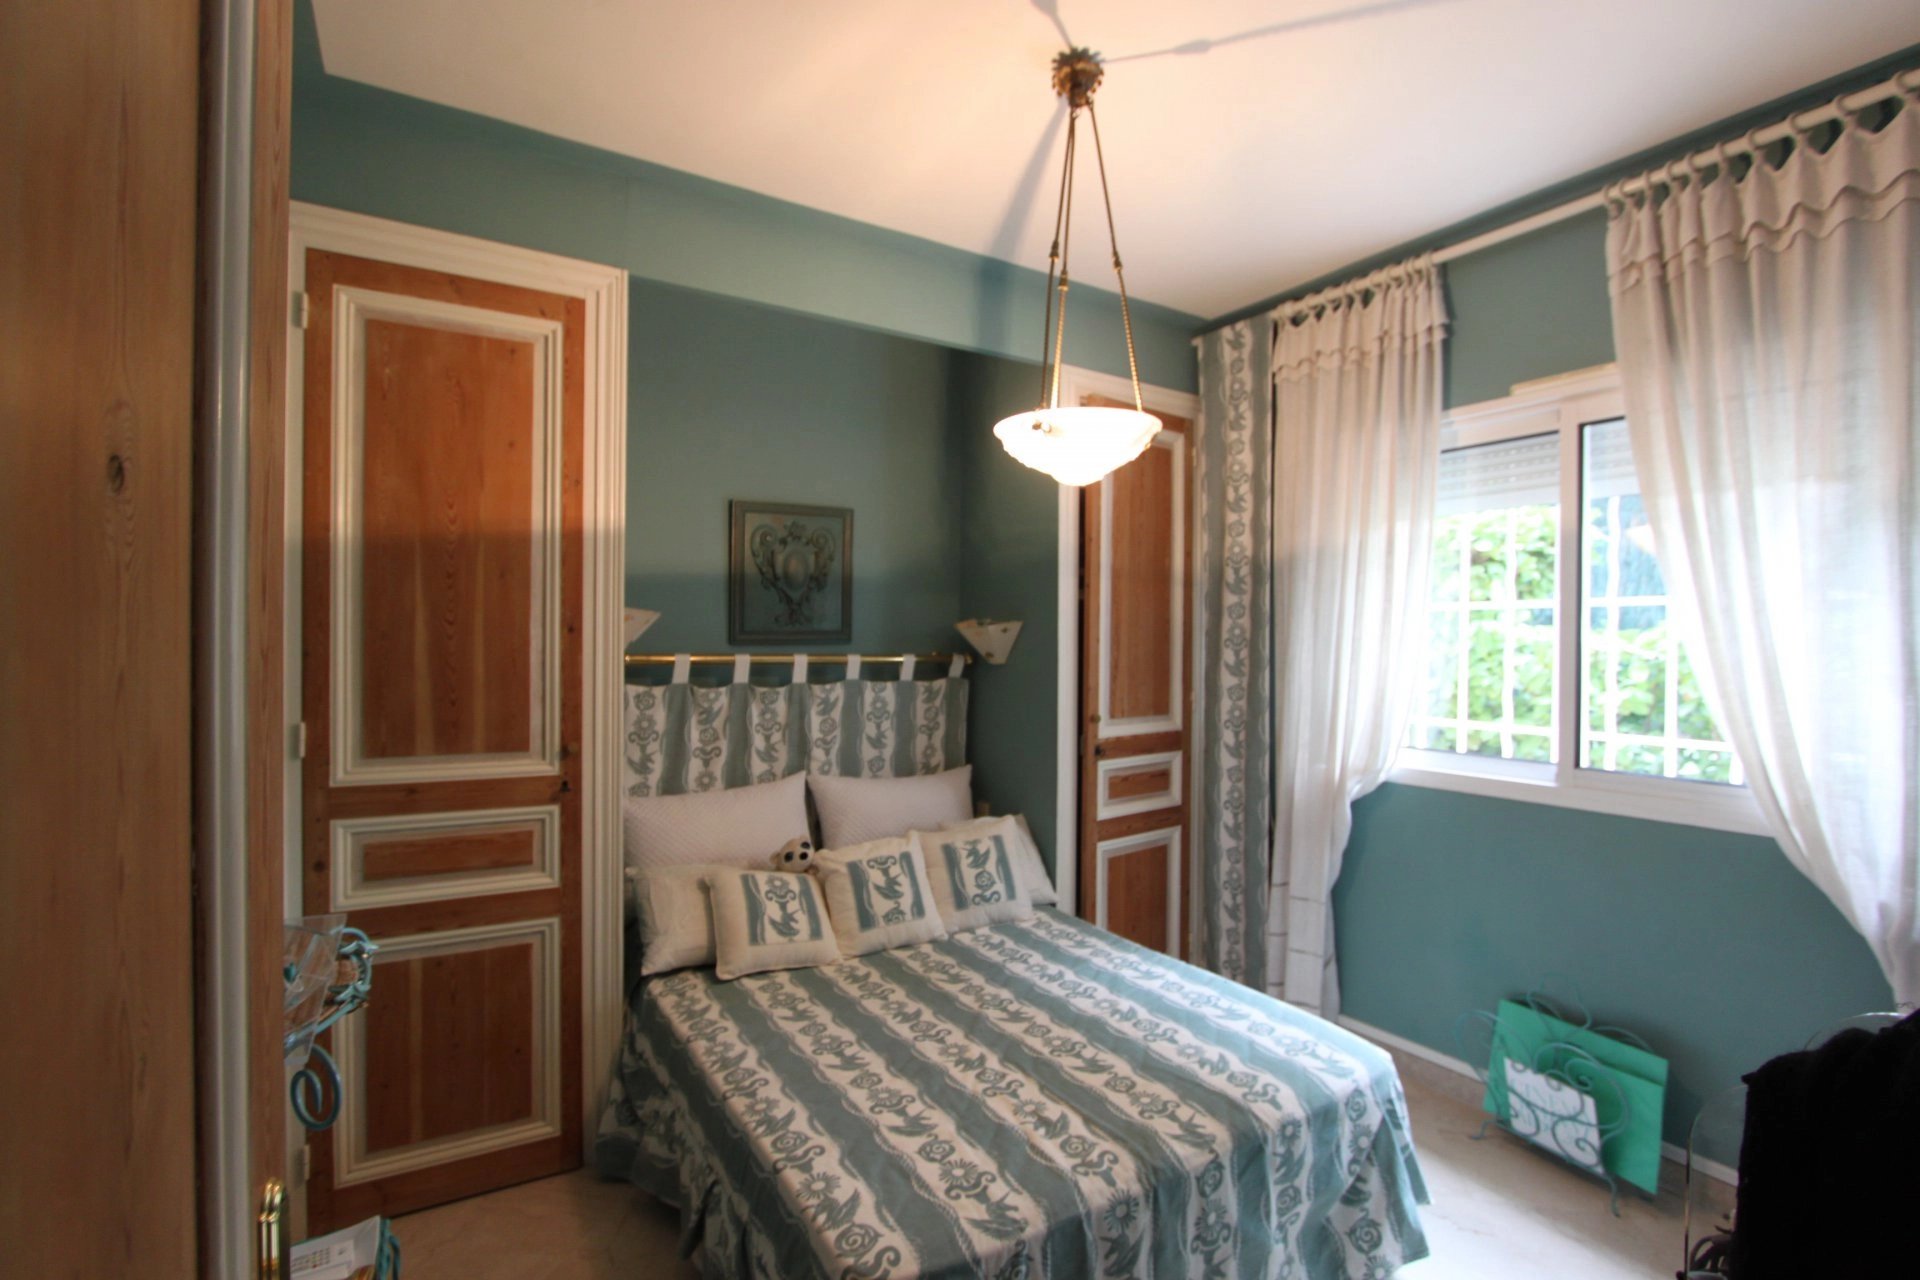 Bedroom, natural light, carpet